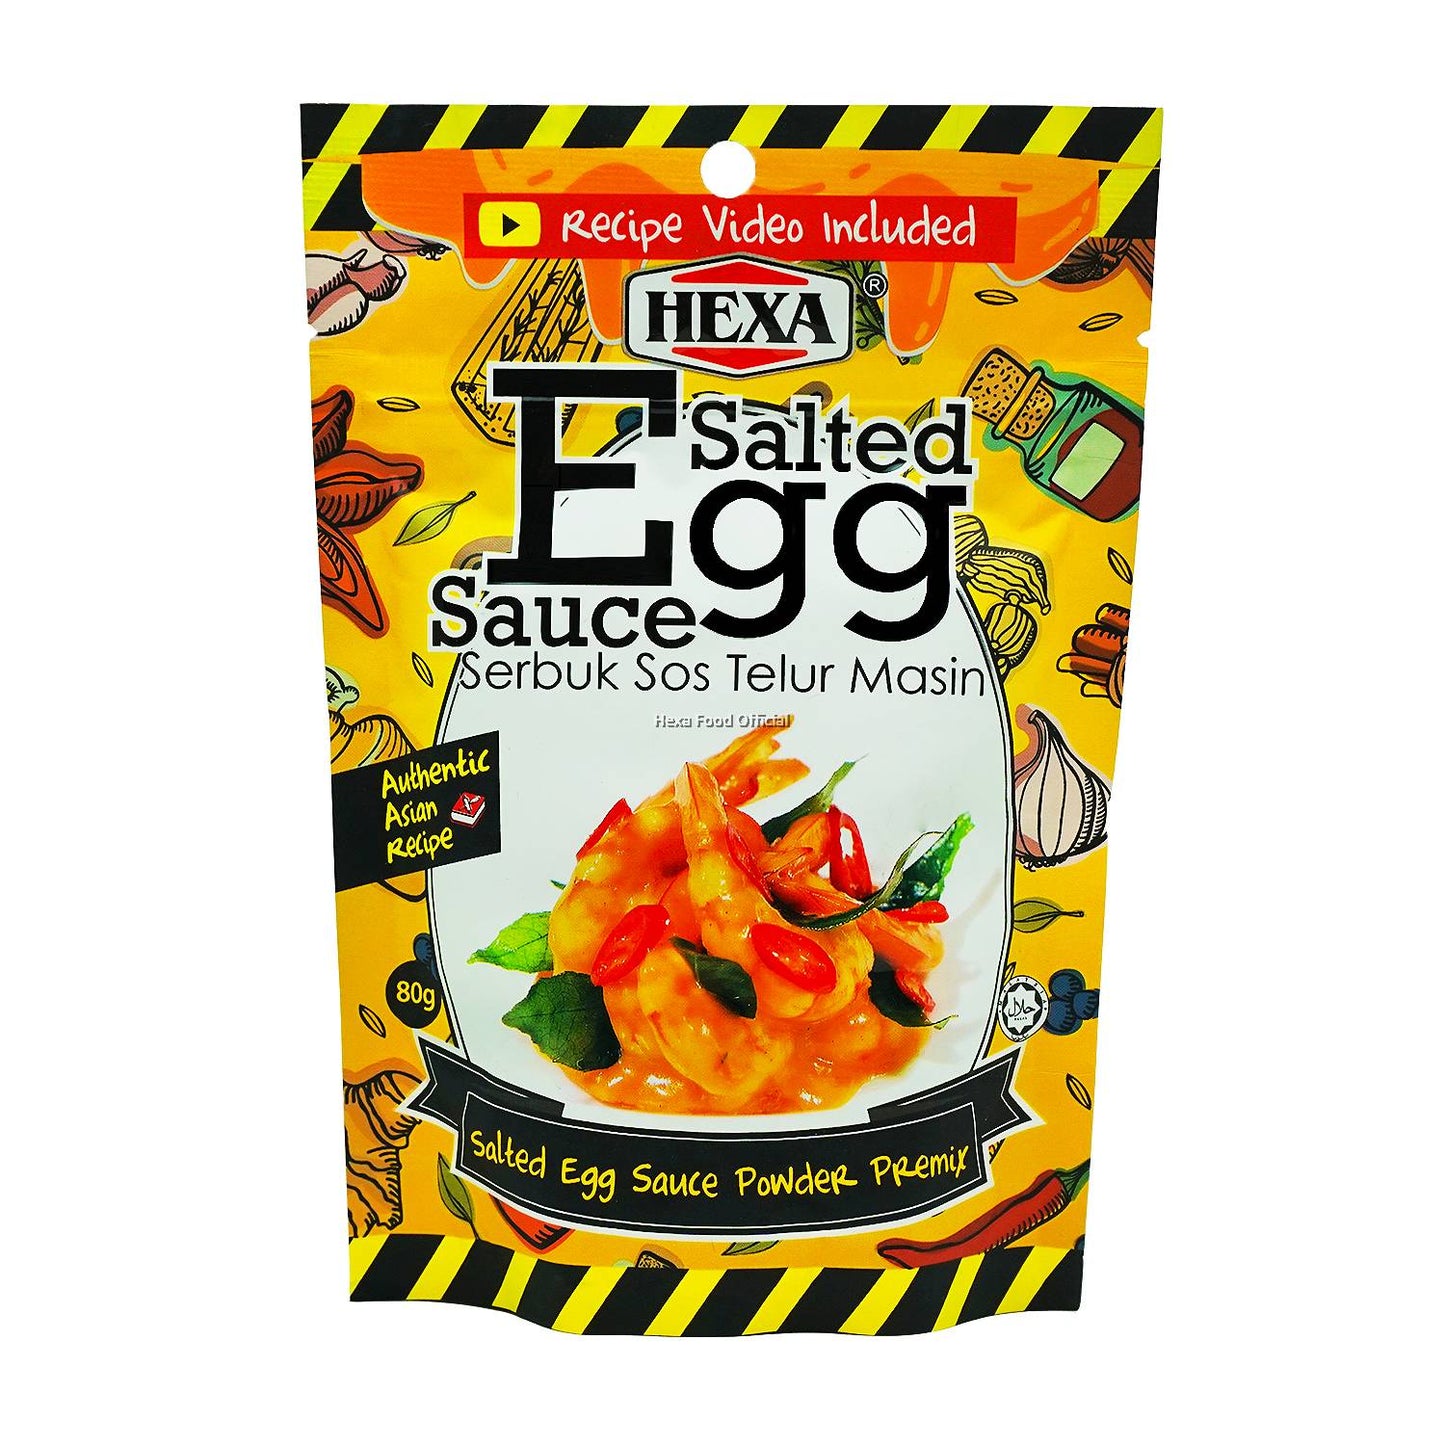 HEXA HALAL Sichuan Mala Rempah 150gm + HEXA Salted Egg Sauce Powder Premix 80gm